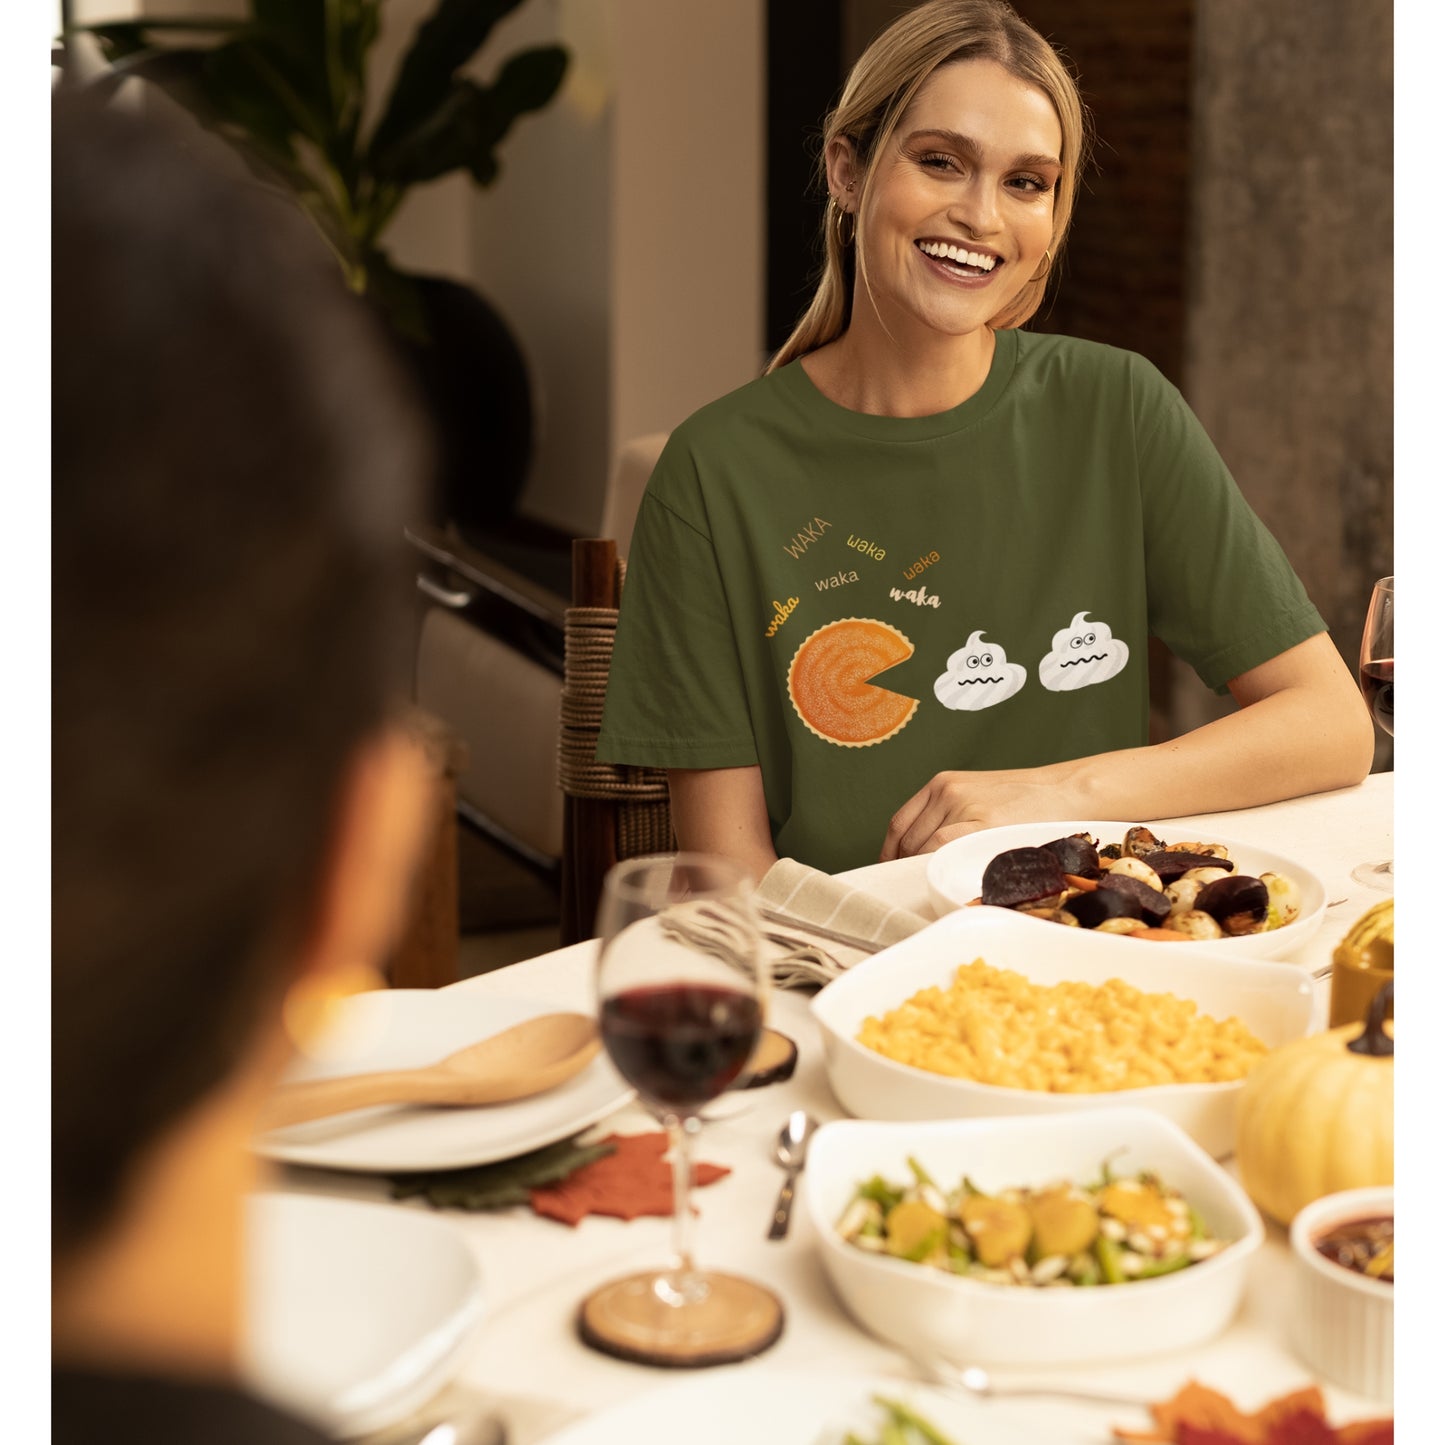 Thanksgiving Tshirt, Pumpkin Pie Shirt, Fall Shirt Women, Funny Holiday Sweatshirt, Humor Quote T-Shirt, Gift for Her, Family Thanksgiving, Pumpkin Pac-Man T-shirt